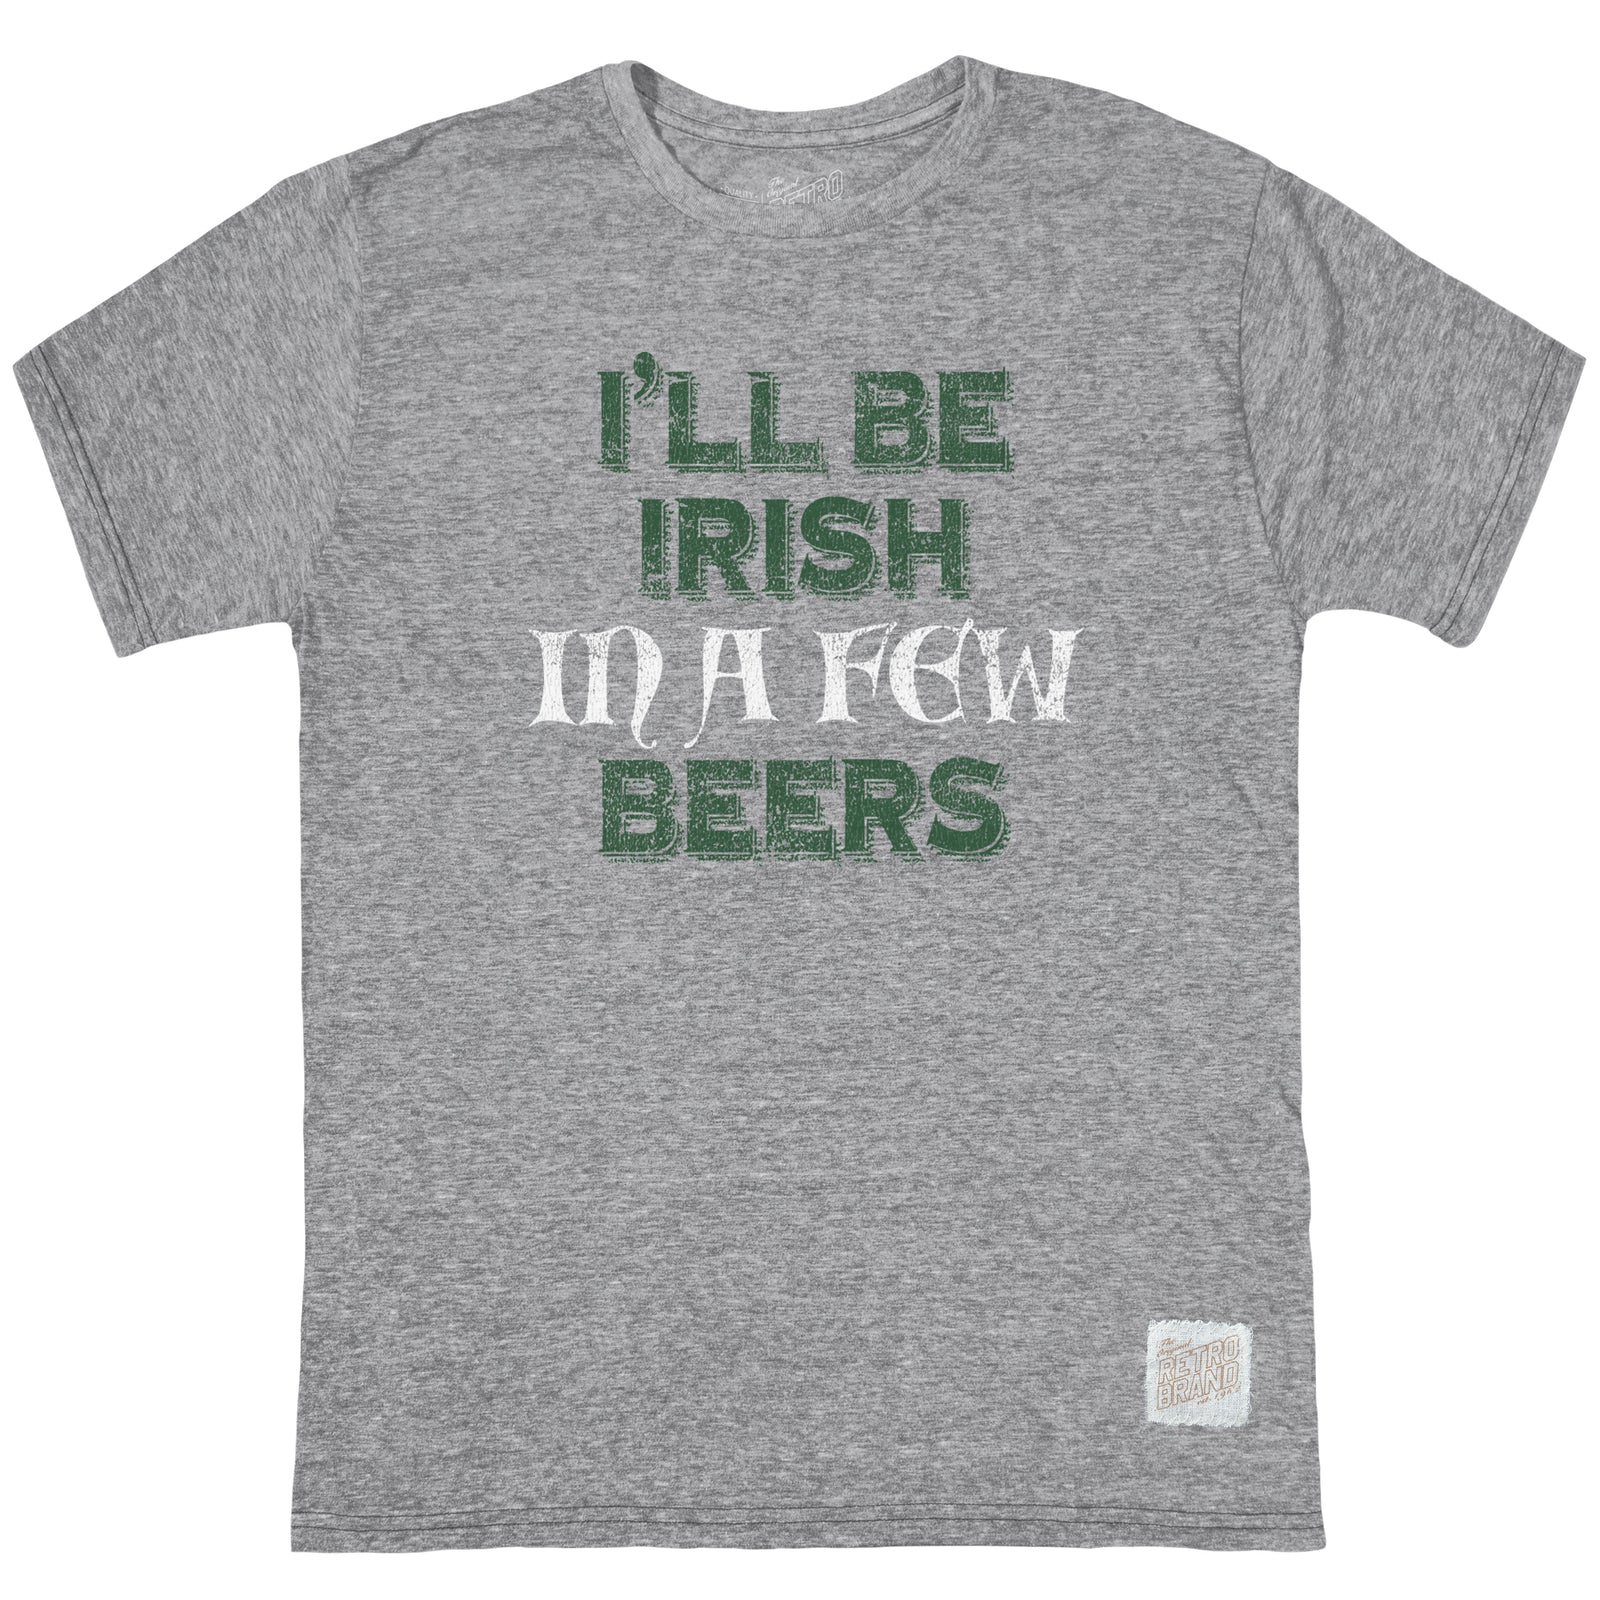 I'll be Irish Tri-Blend Tee